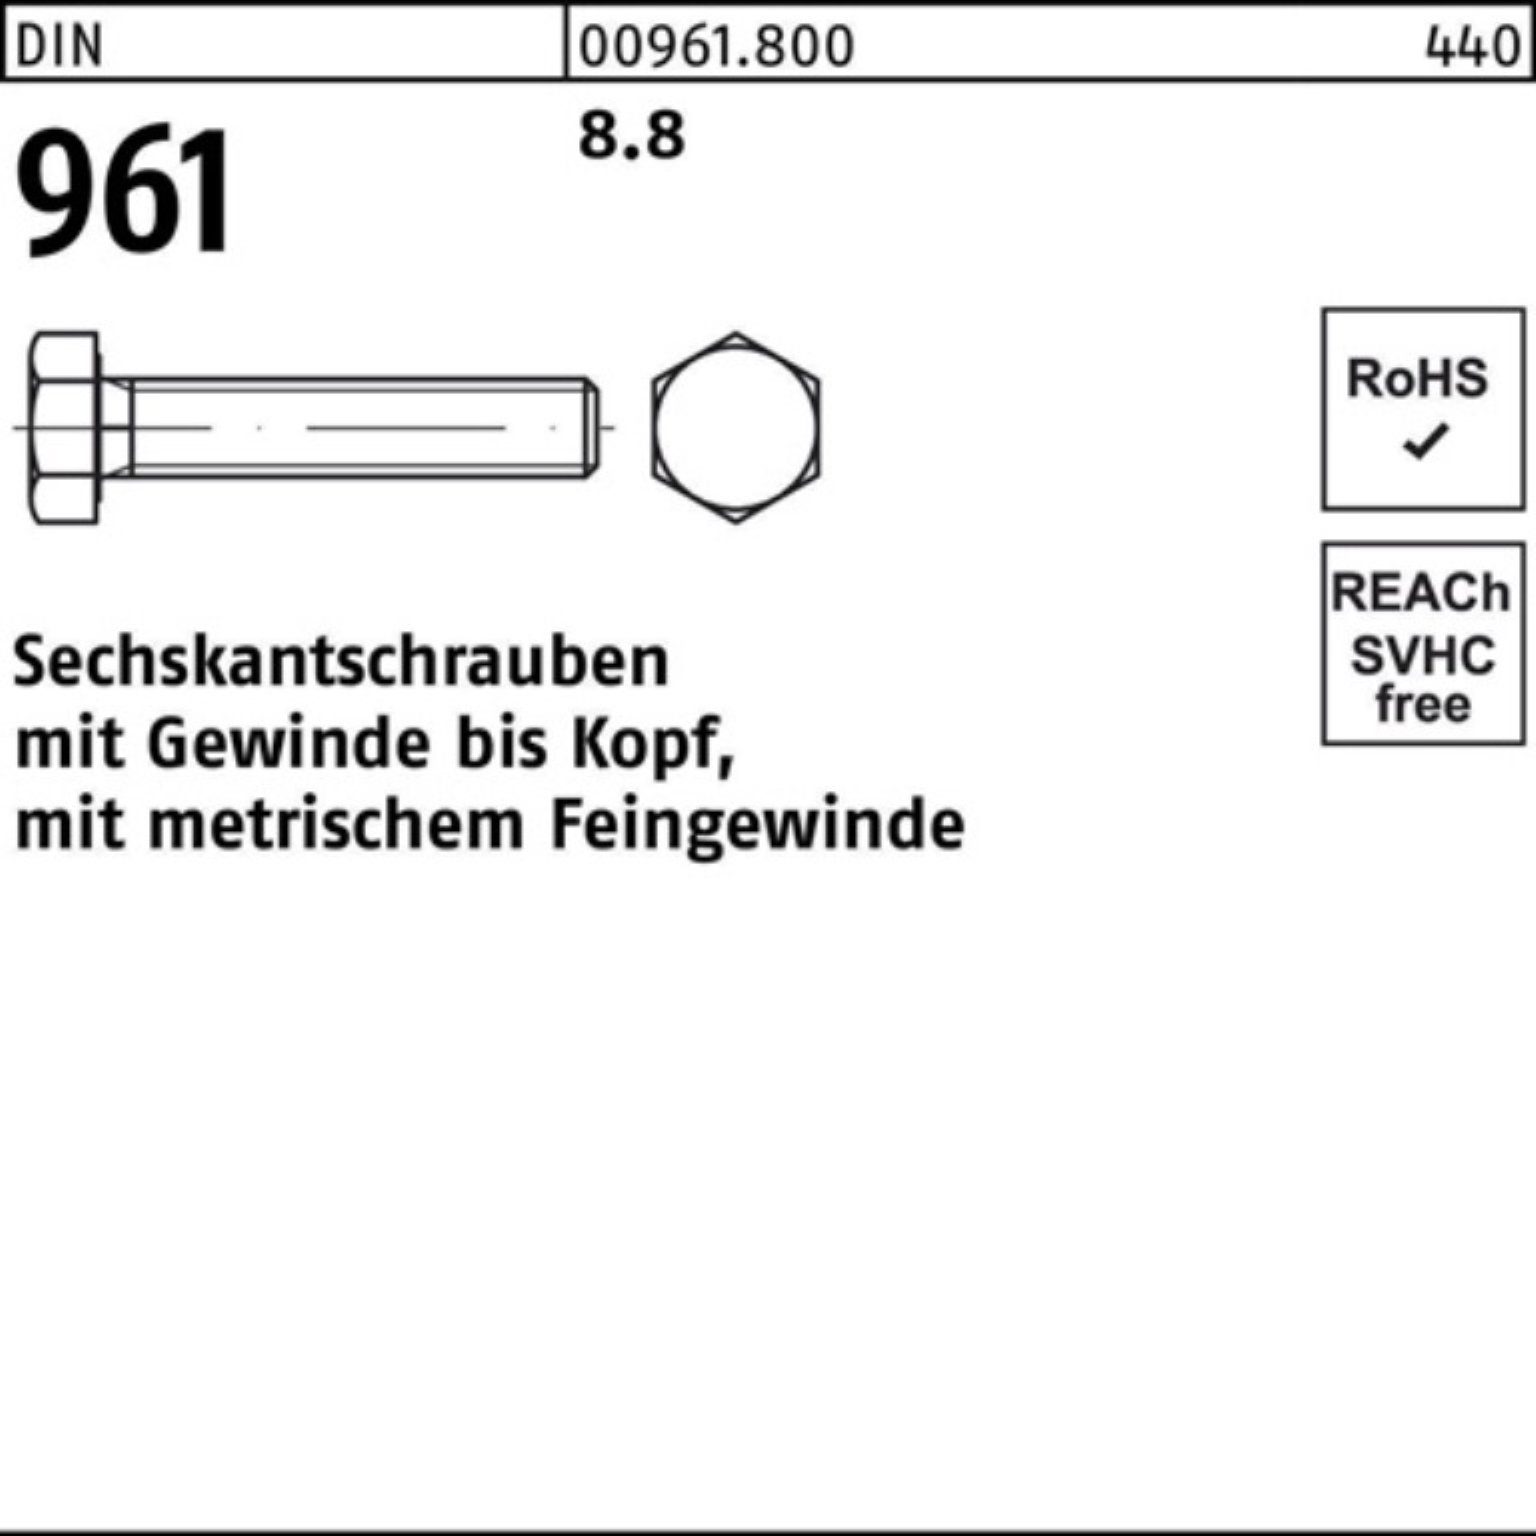 Pack 96 Sechskantschraube 961 70 Sechskantschraube Reyher 100er DIN DIN M24x2x VG 25 8.8 Stück